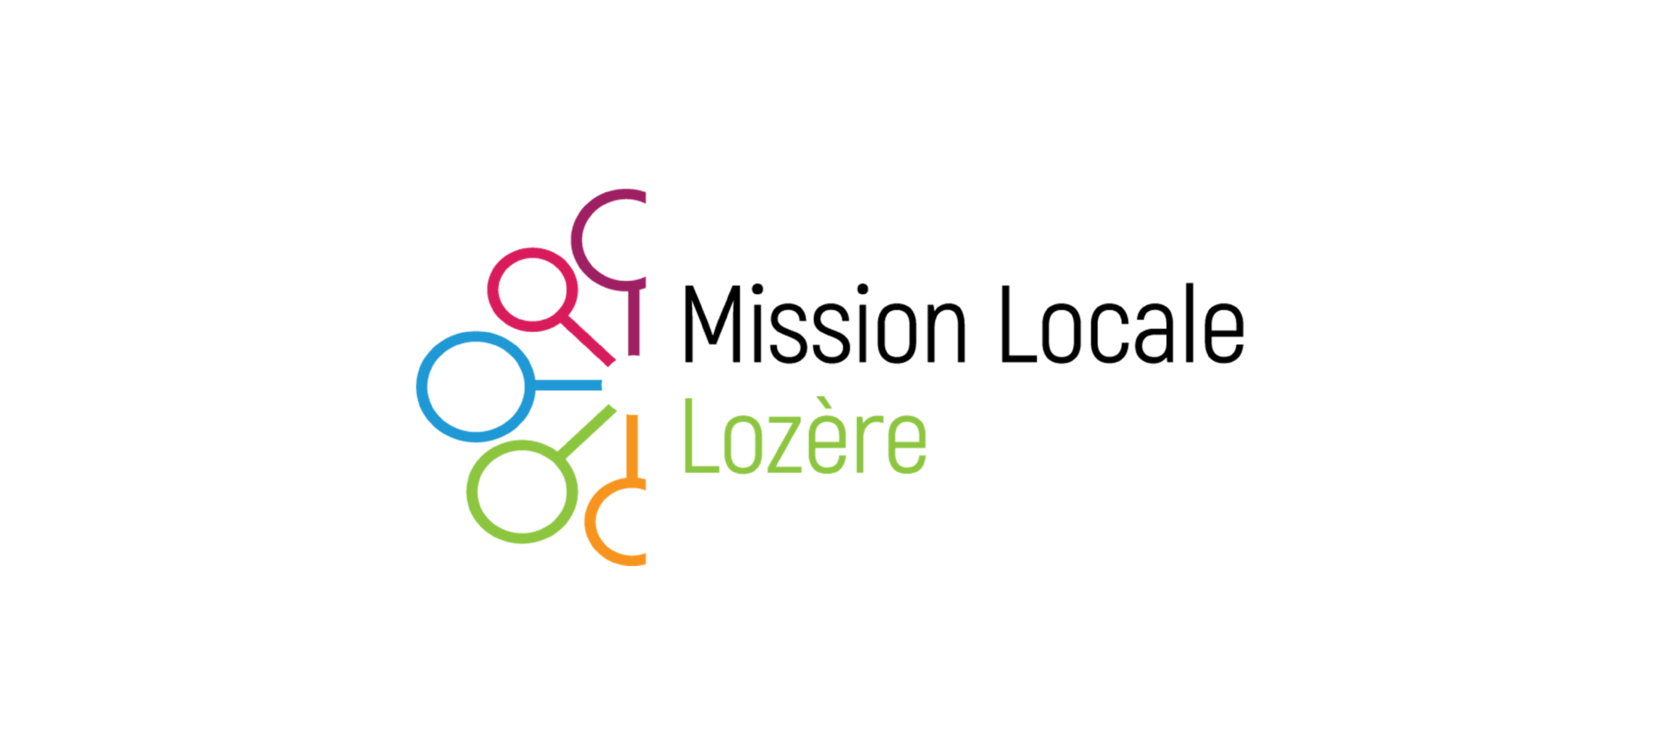 Mission Locale Lozère